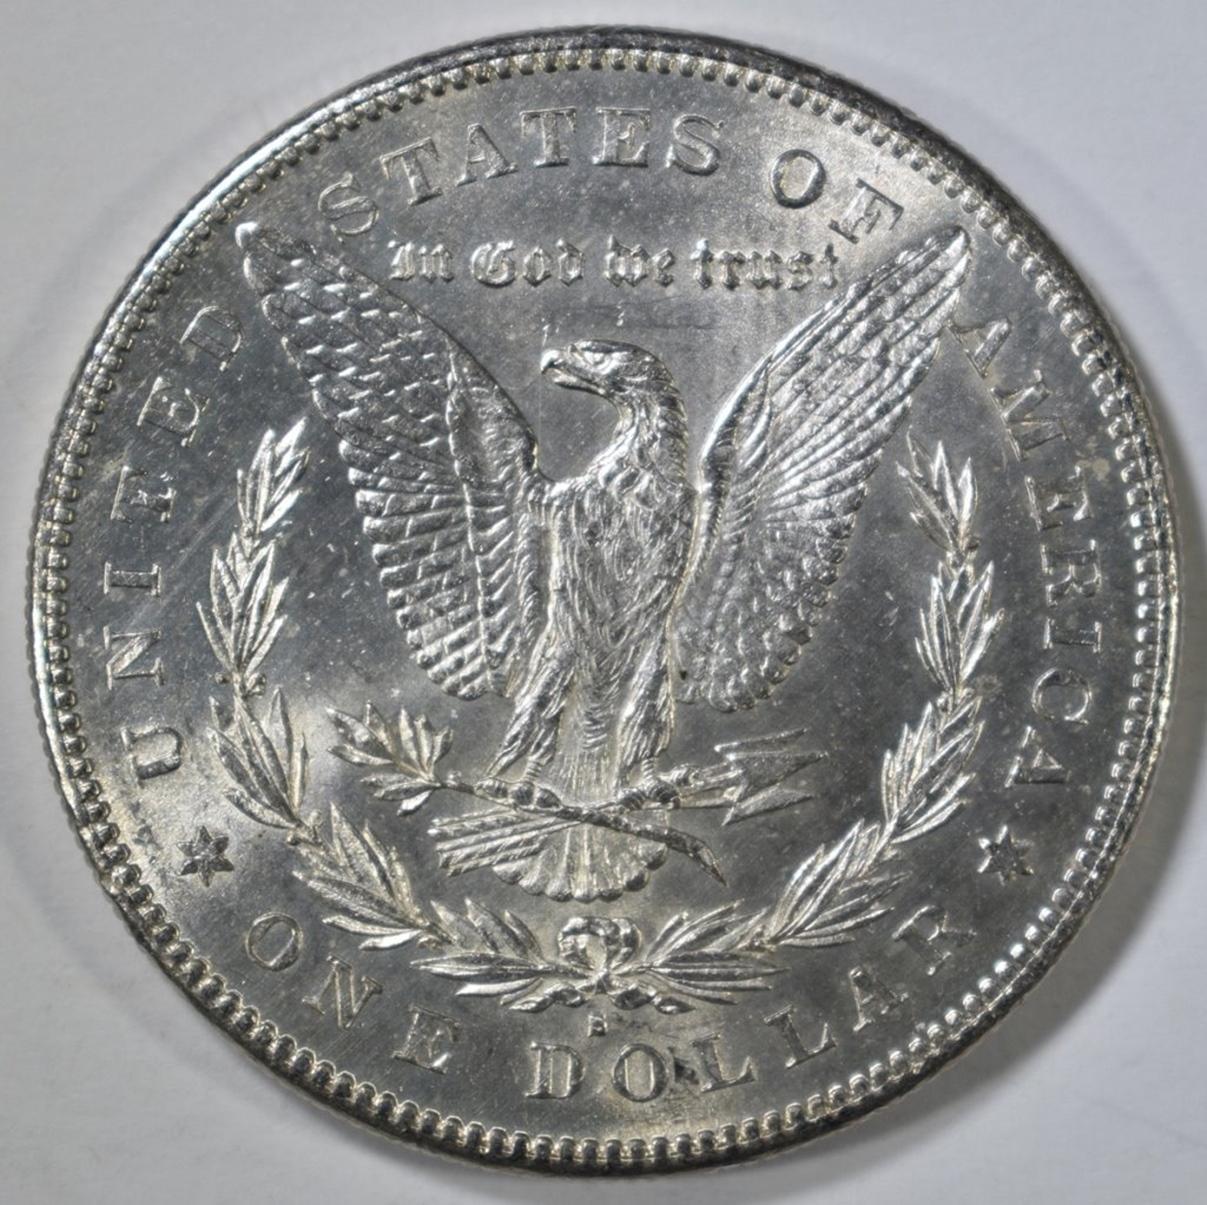 1878-S MORGAN DOLLAR CH BU